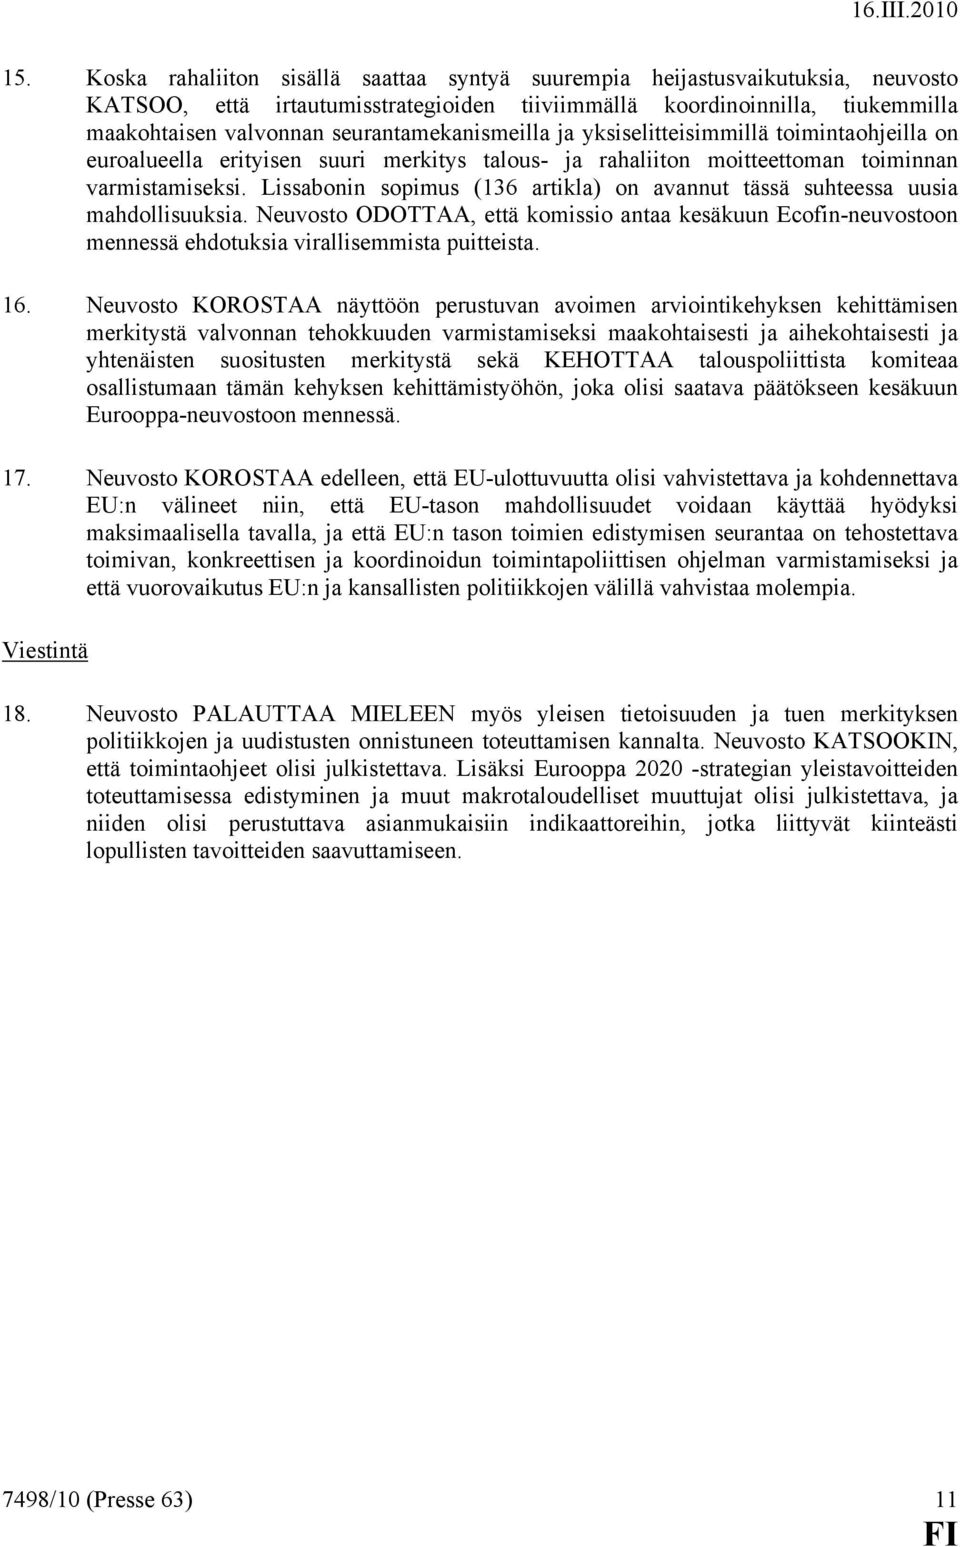 Lissabonin sopimus (136 artikla) on avannut tässä suhteessa uusia mahdollisuuksia. Neuvosto ODOTTAA, että komissio antaa kesäkuun Ecofin-neuvostoon mennessä ehdotuksia virallisemmista puitteista. 16.